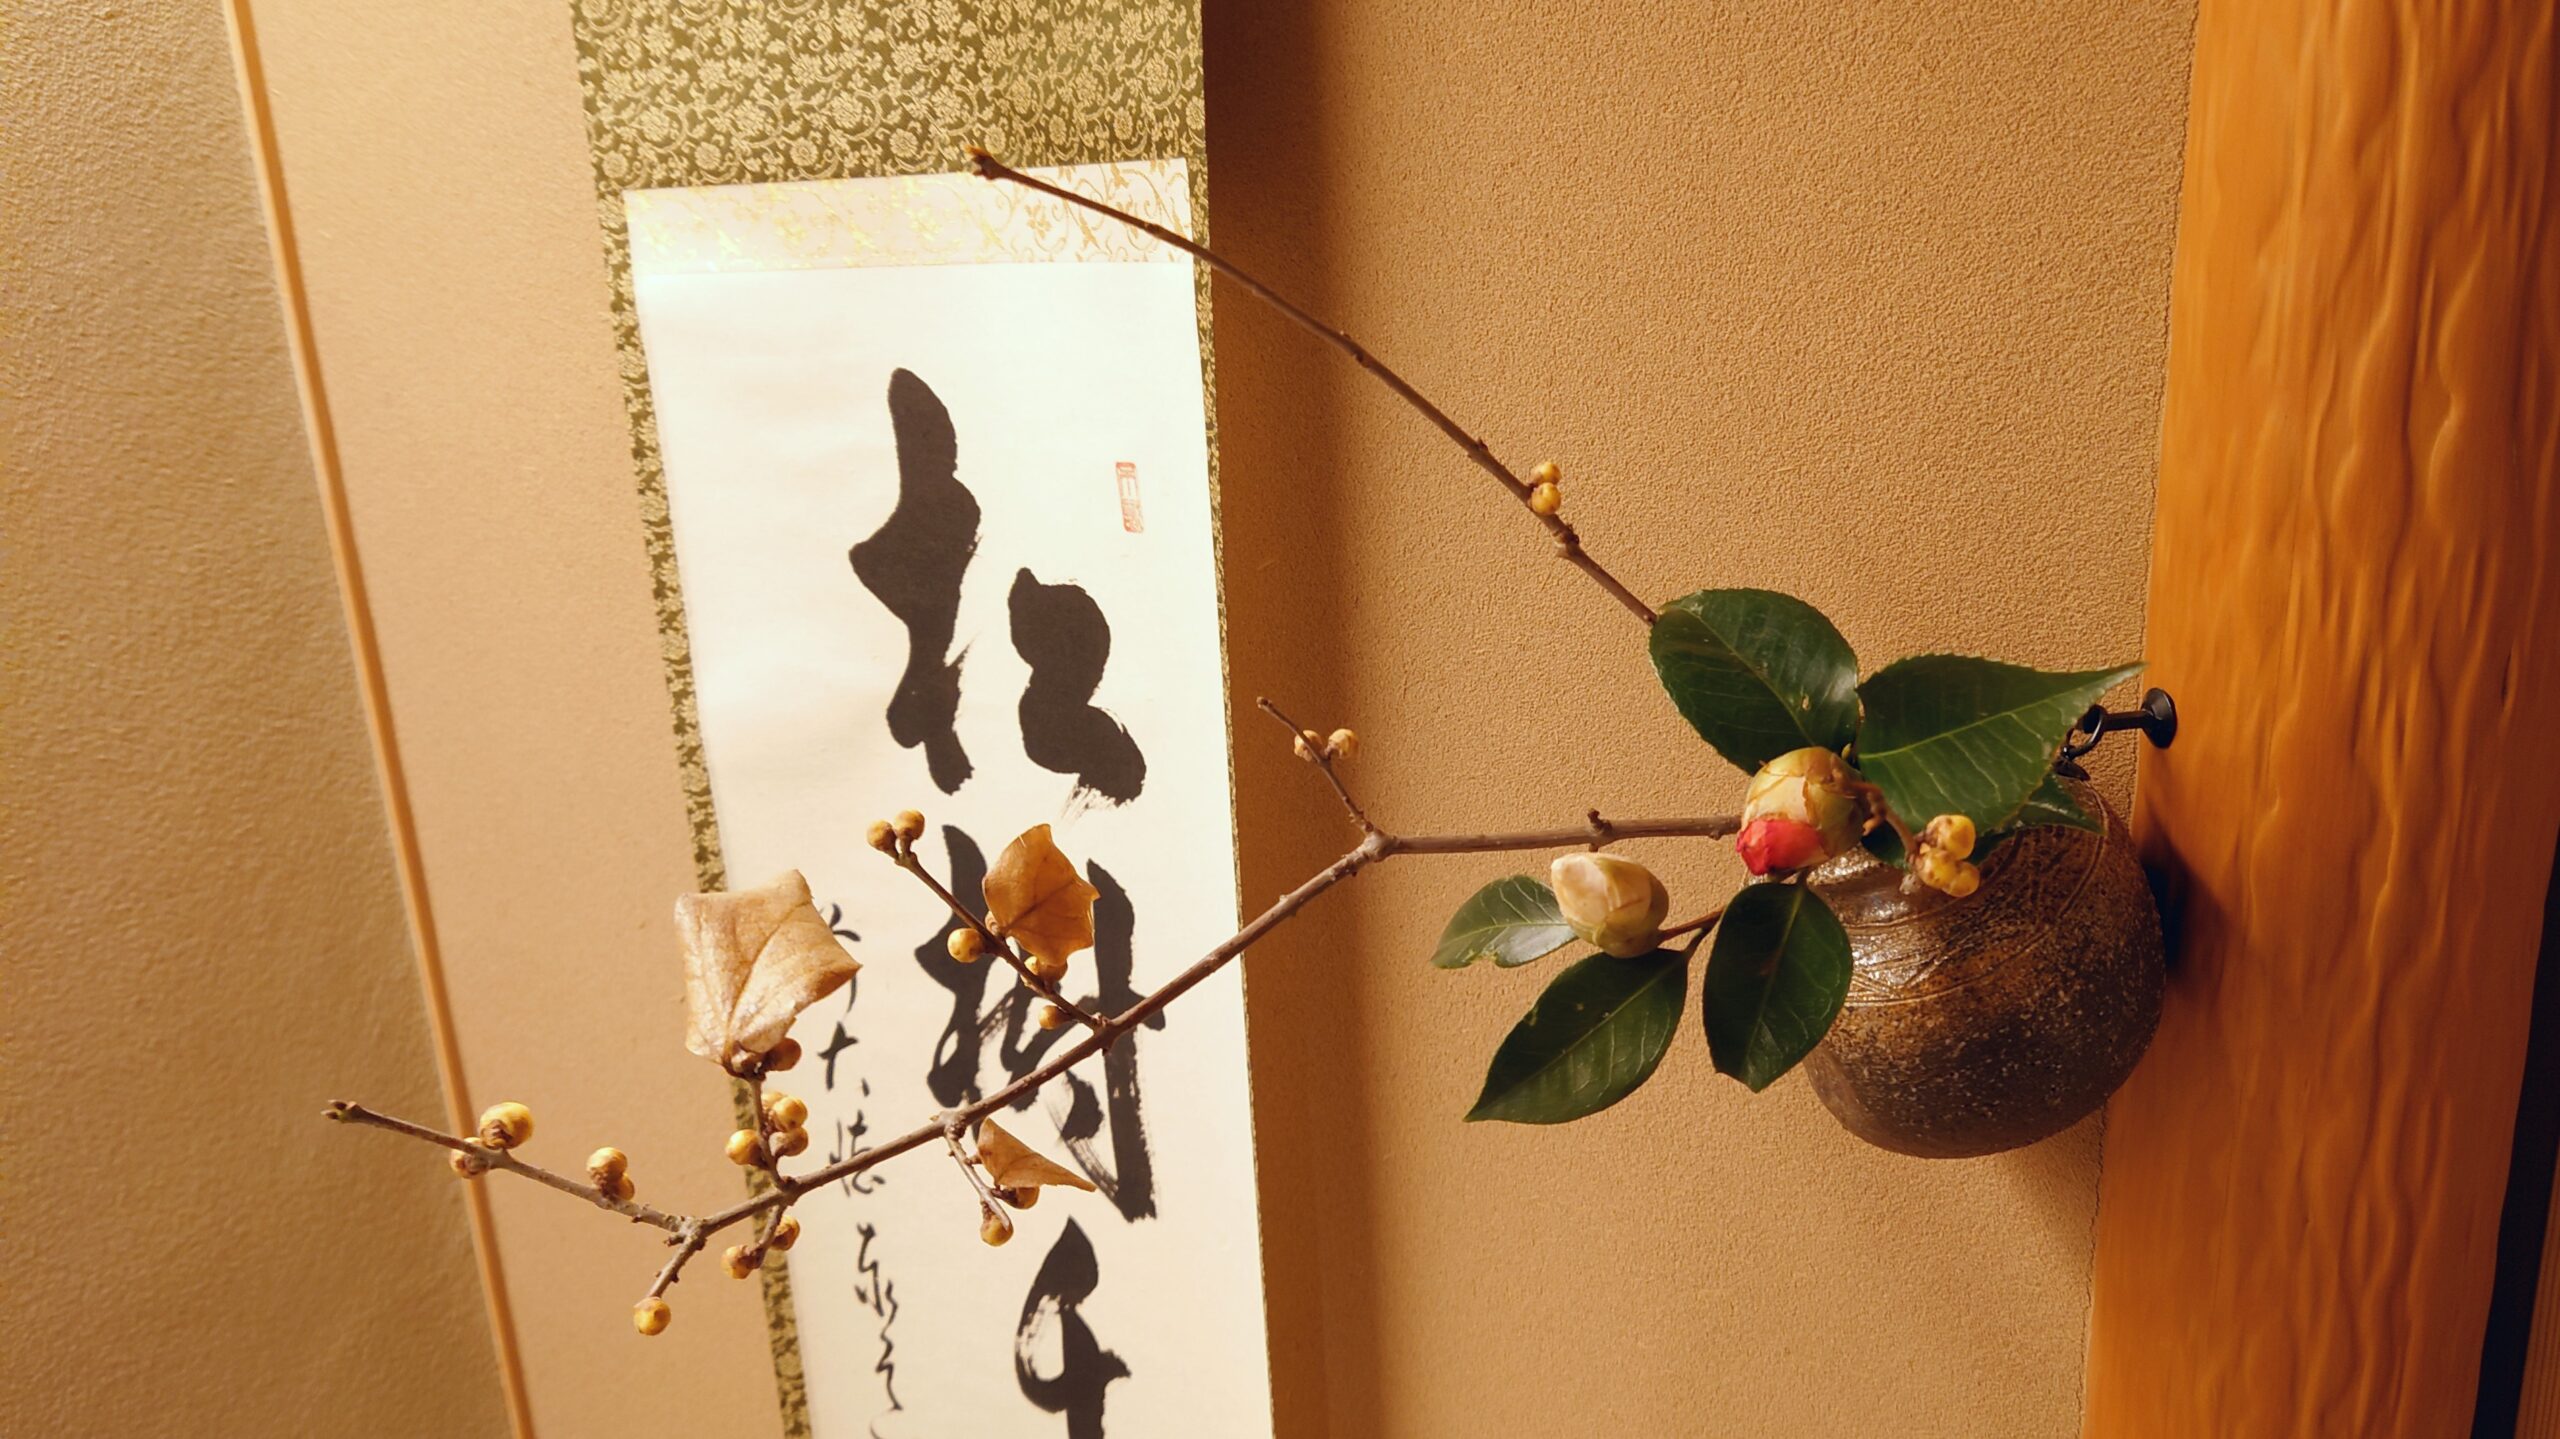 松樹千年翠の掛け軸、茶花は蝋梅と椿